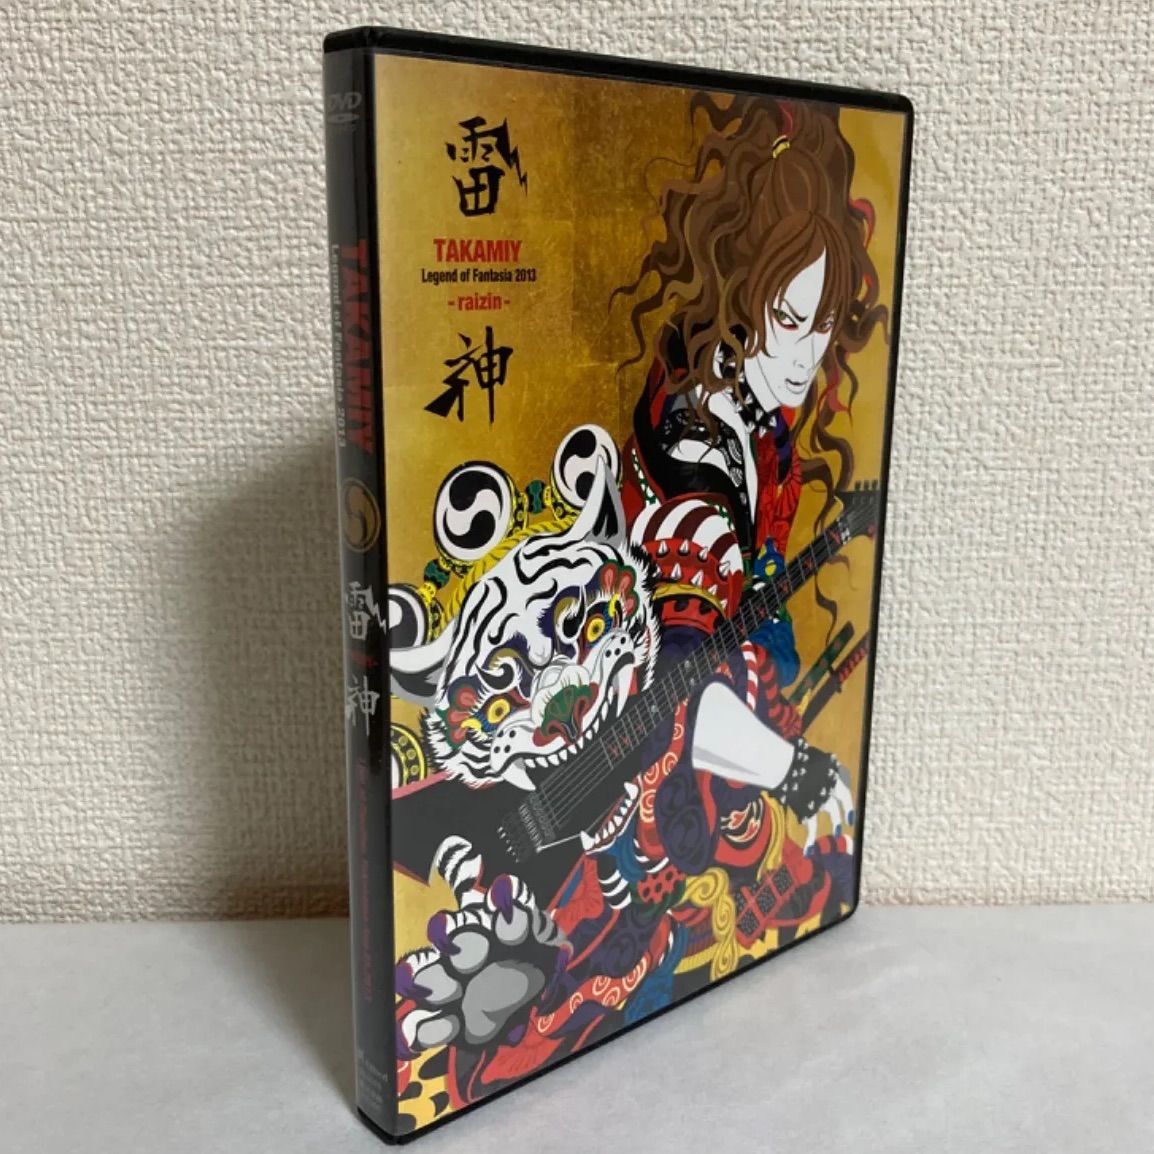 DVD/Takamiy Legend of Fantasia 2013 雷神 - Hobby shop mm - メルカリ